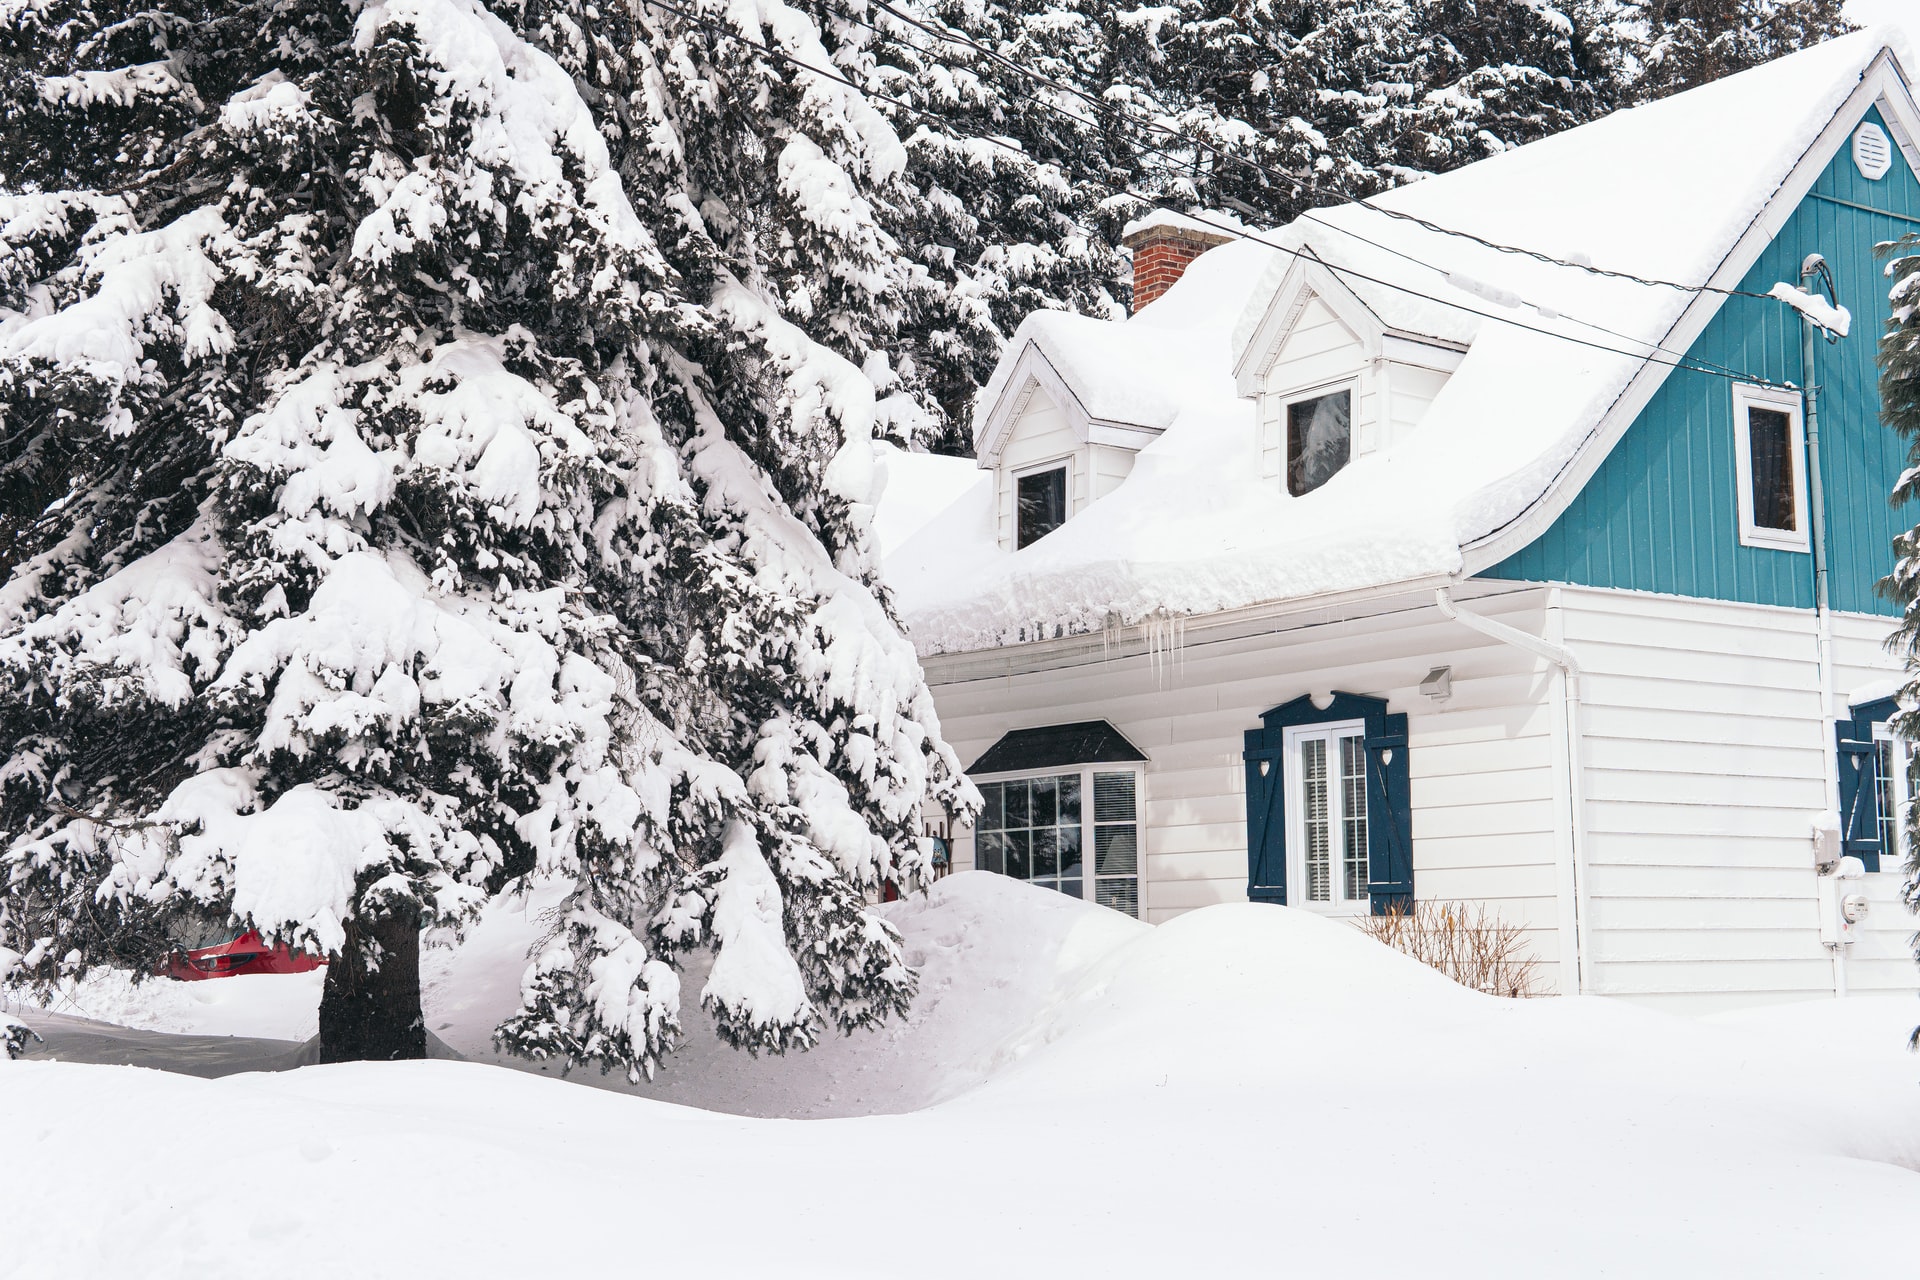 Acheter une maison en hiver : une bonne idée ?